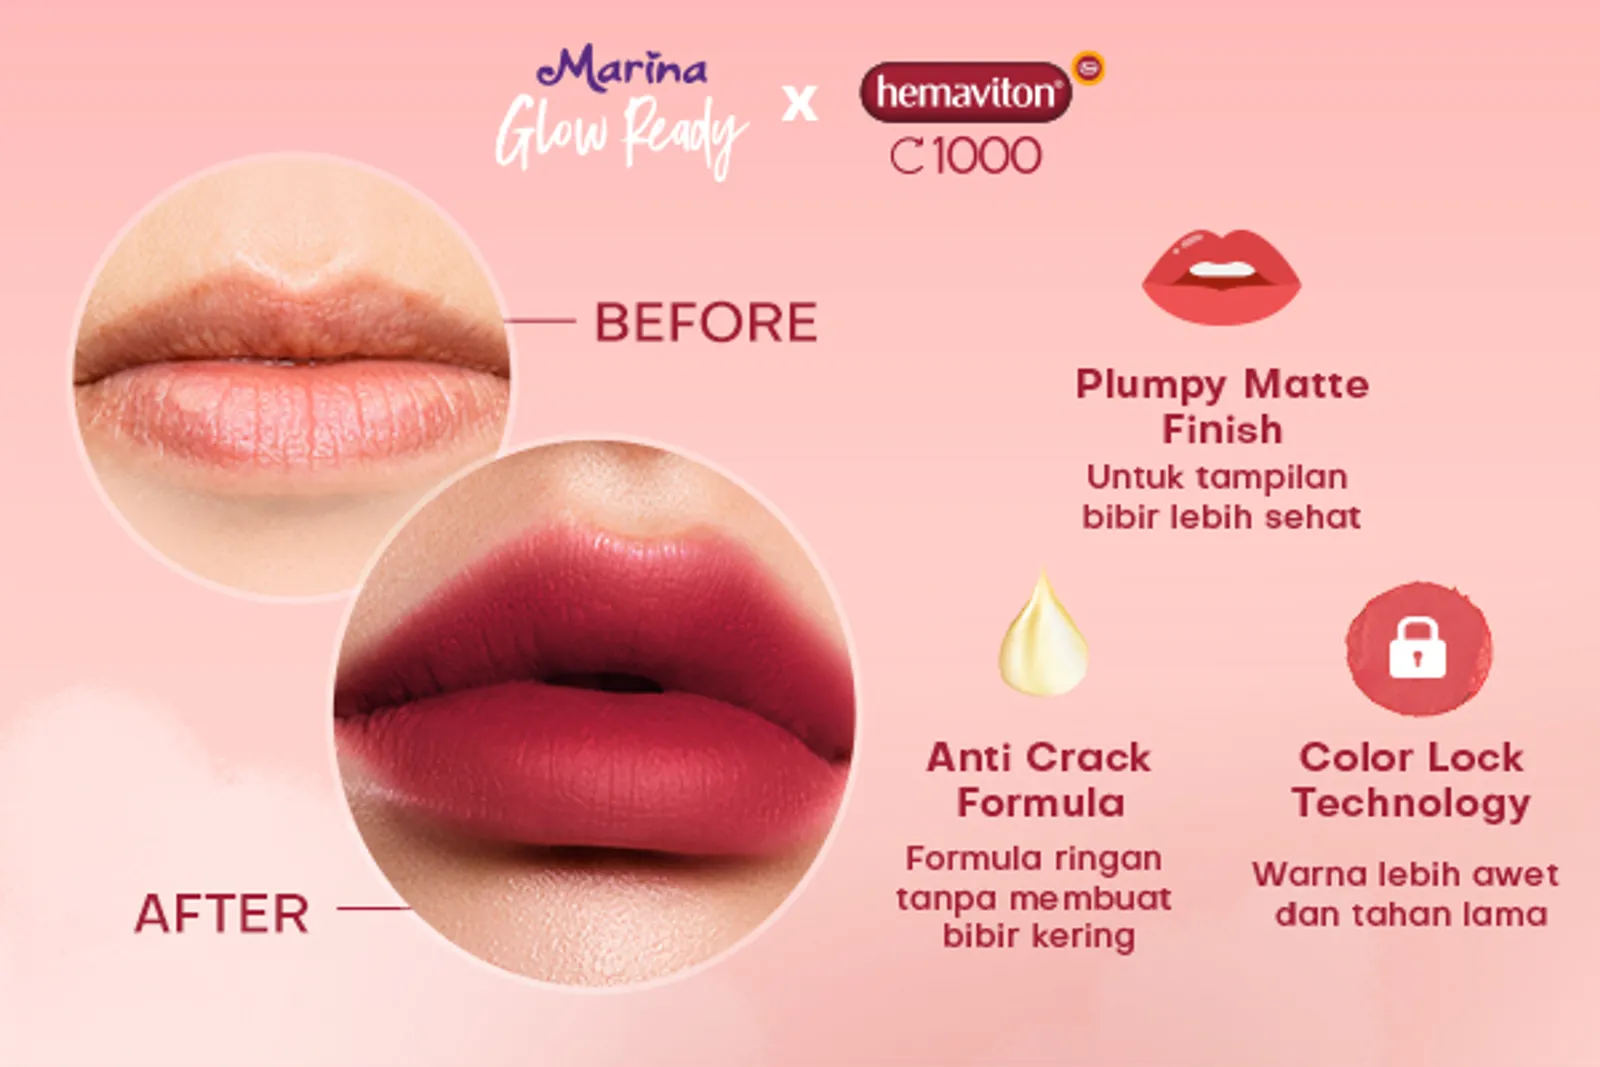 Review: Marina Glow Ready Lip Cream x hemaviton C1000 Limited Edition